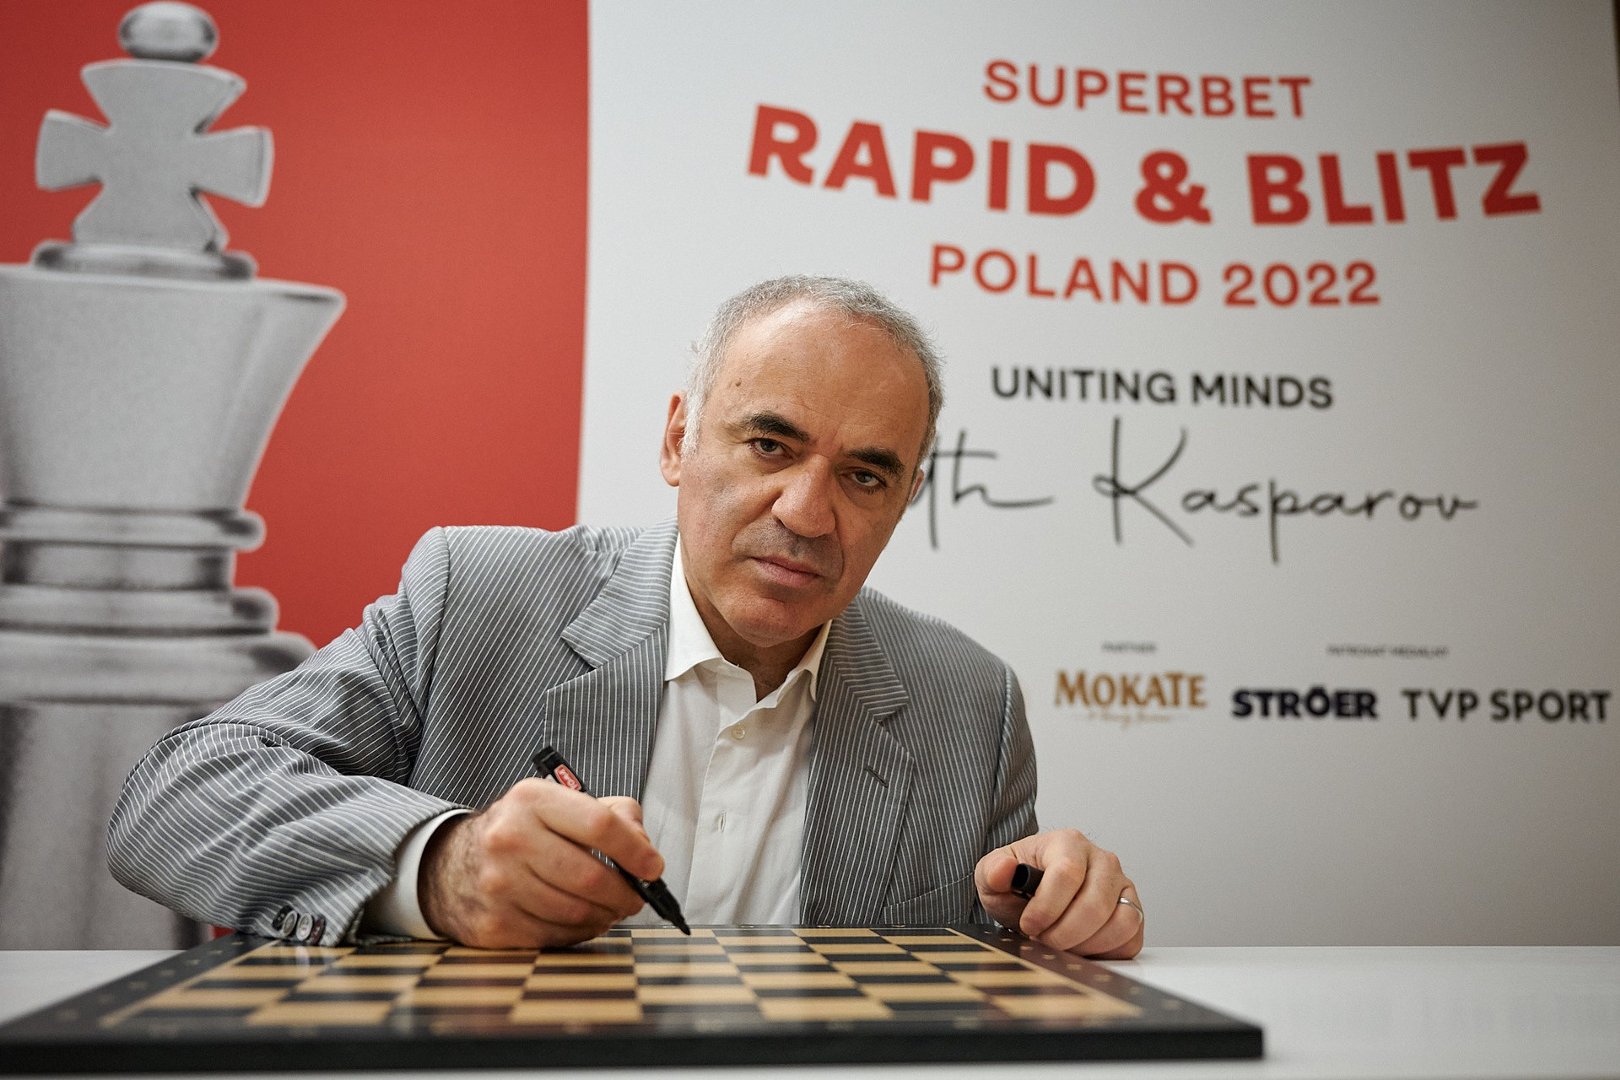 Garri Kasparow otworzył turniej Superbet Rapid & Blitz Poland.  Jan-Krzysztof Duda wiceliderem po pierwszym dniu | Sportowy24